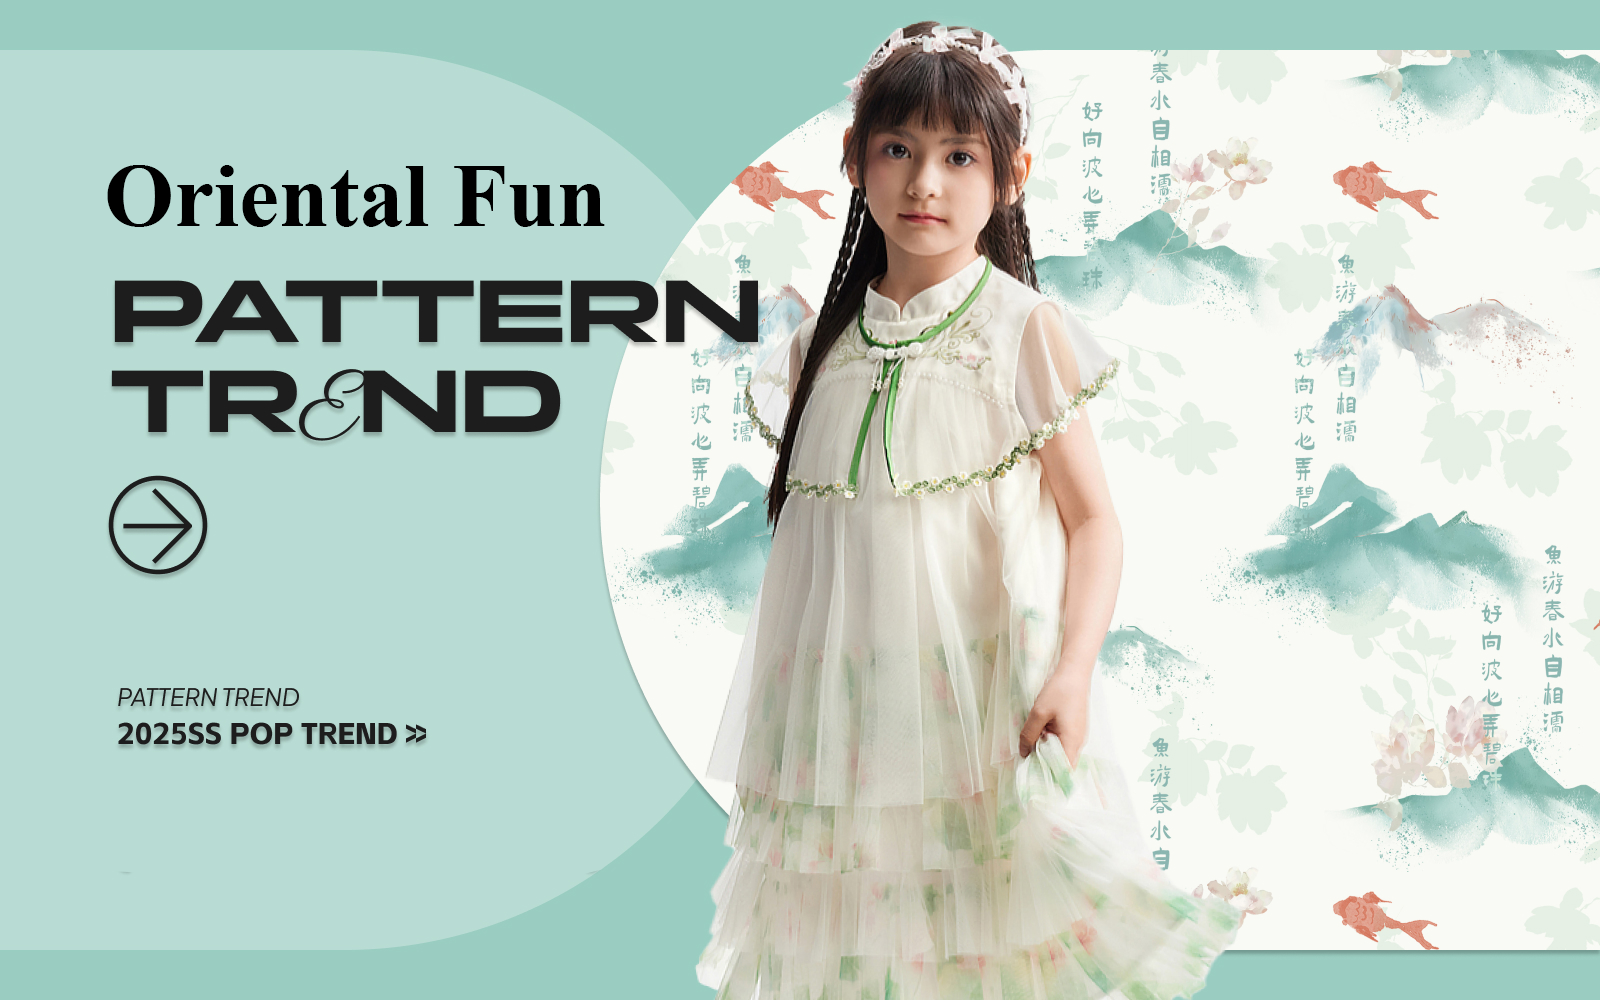 Oriental Fun -- The Pattern Trend for Kidswear